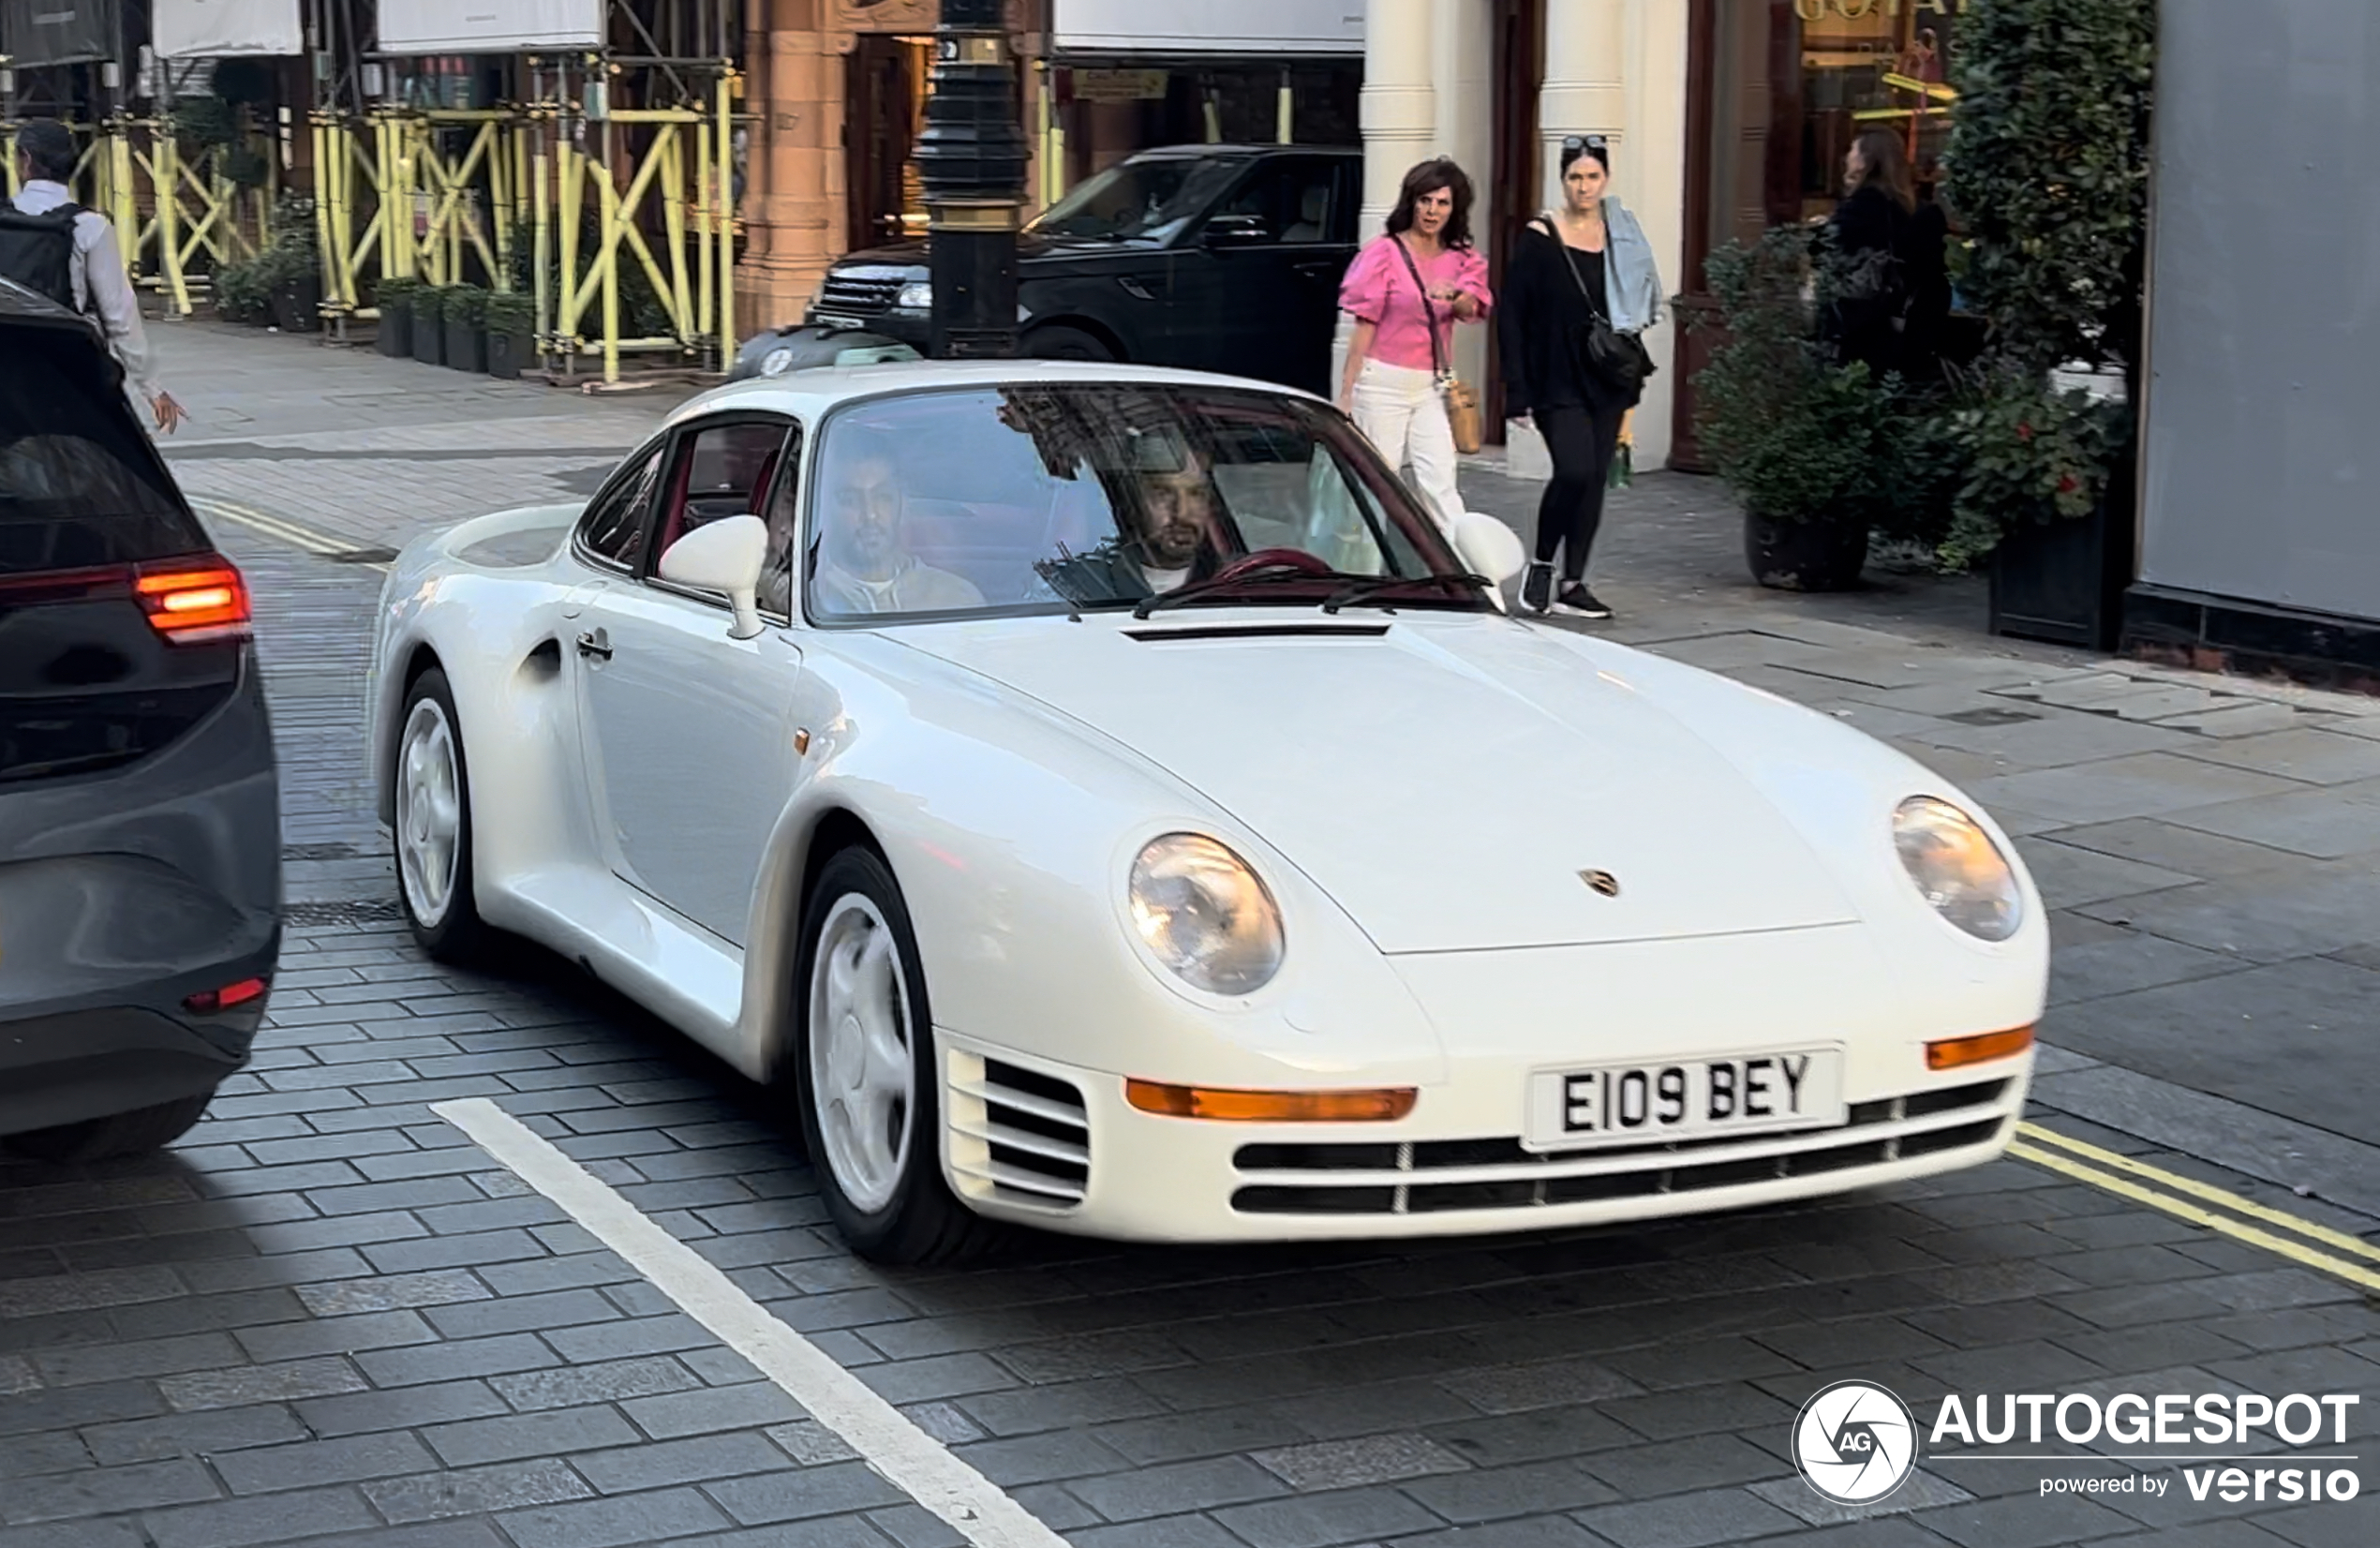 Have you ever seen a Porsche 959?